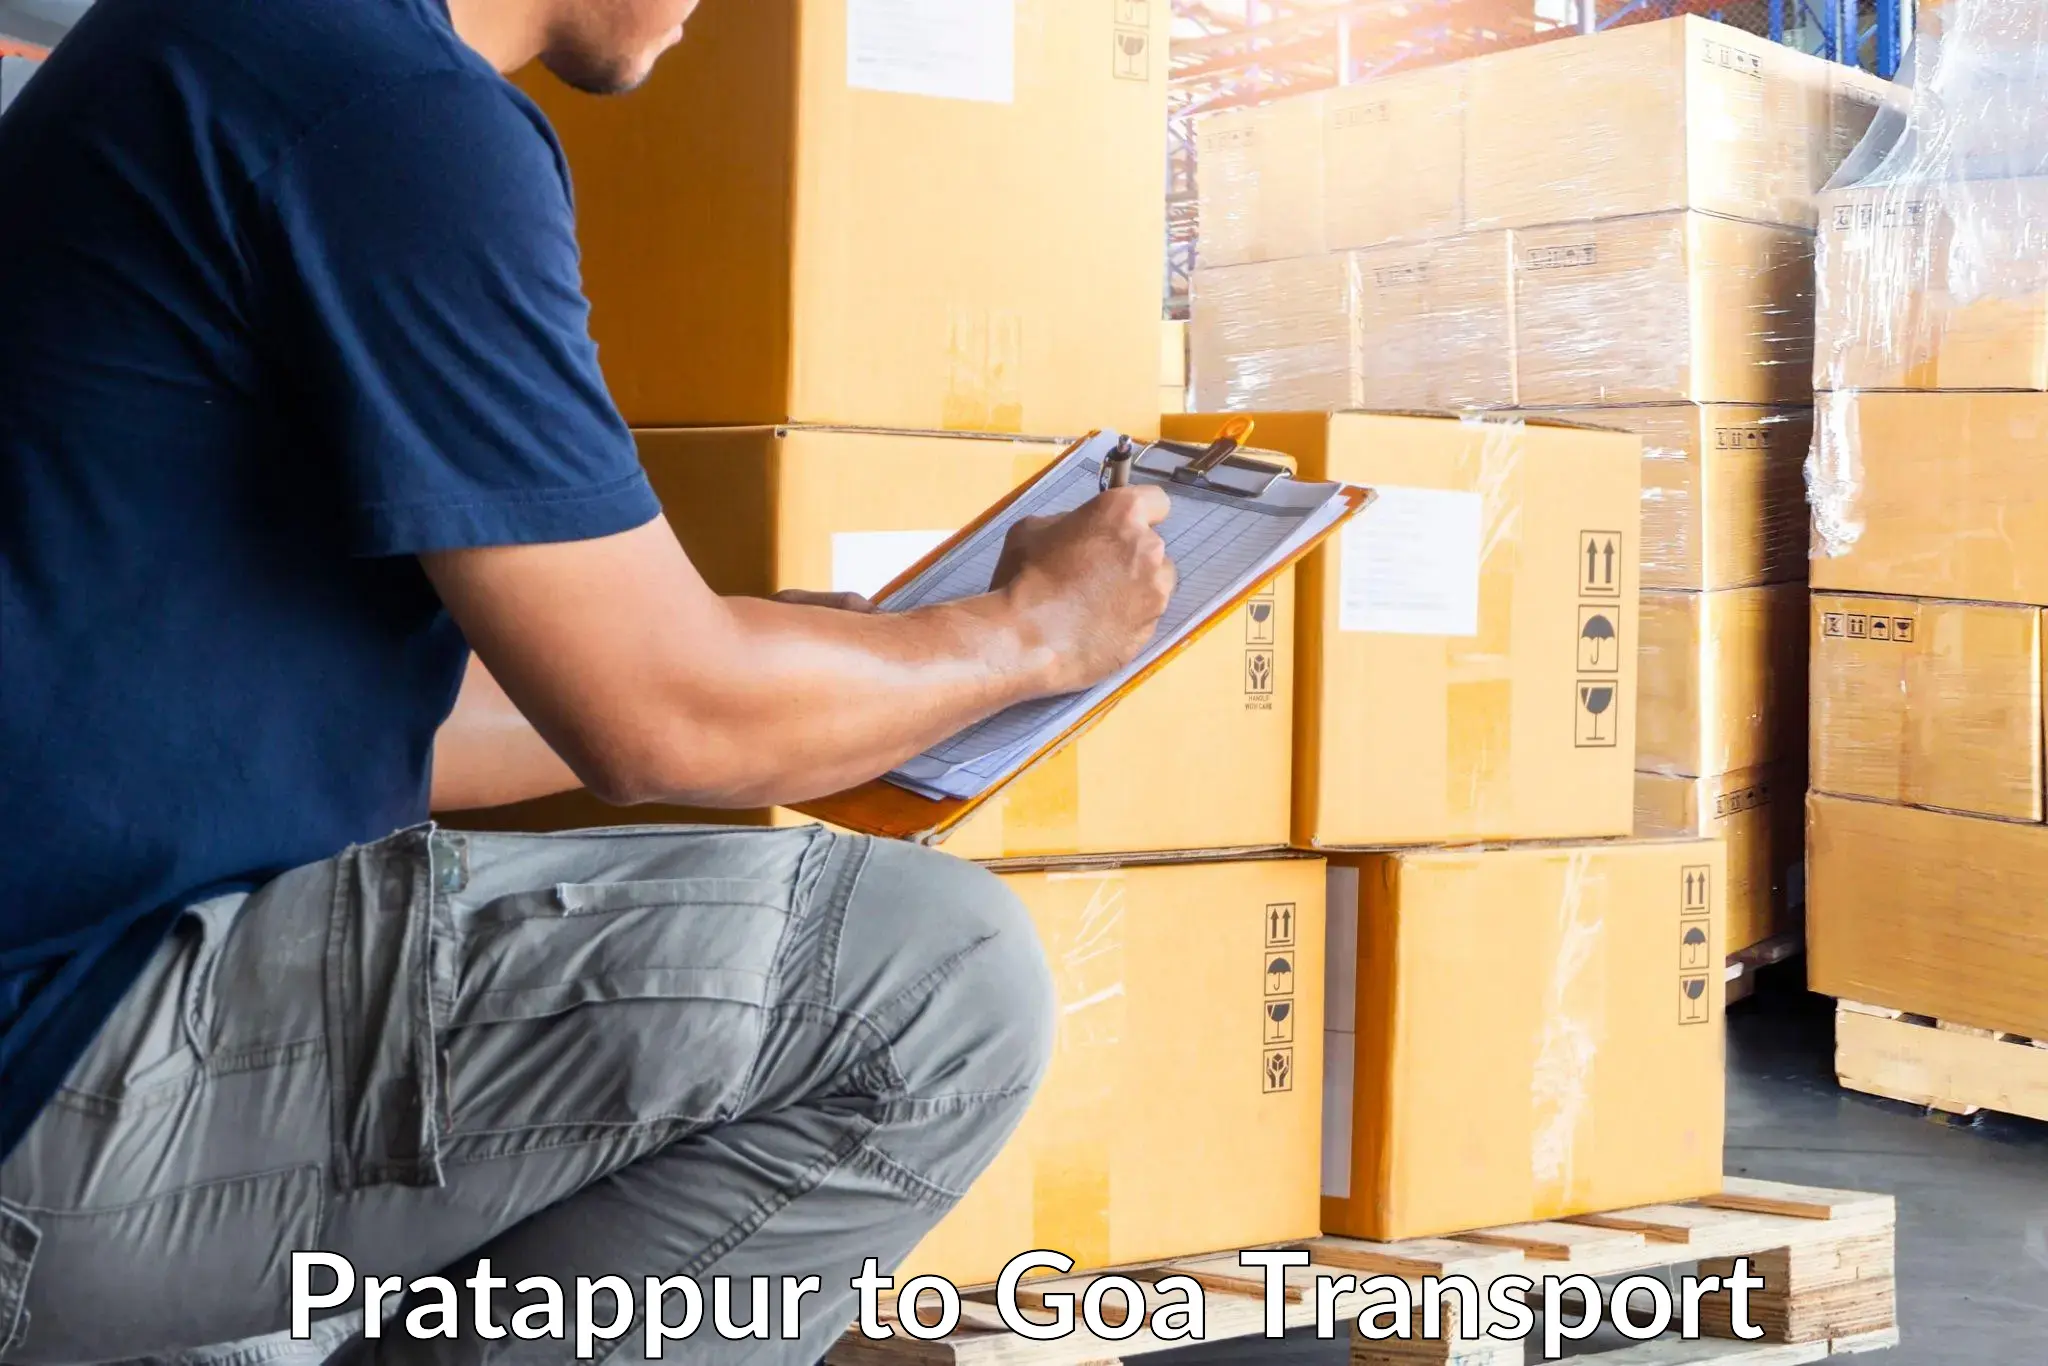 Two wheeler parcel service Pratappur to Goa University